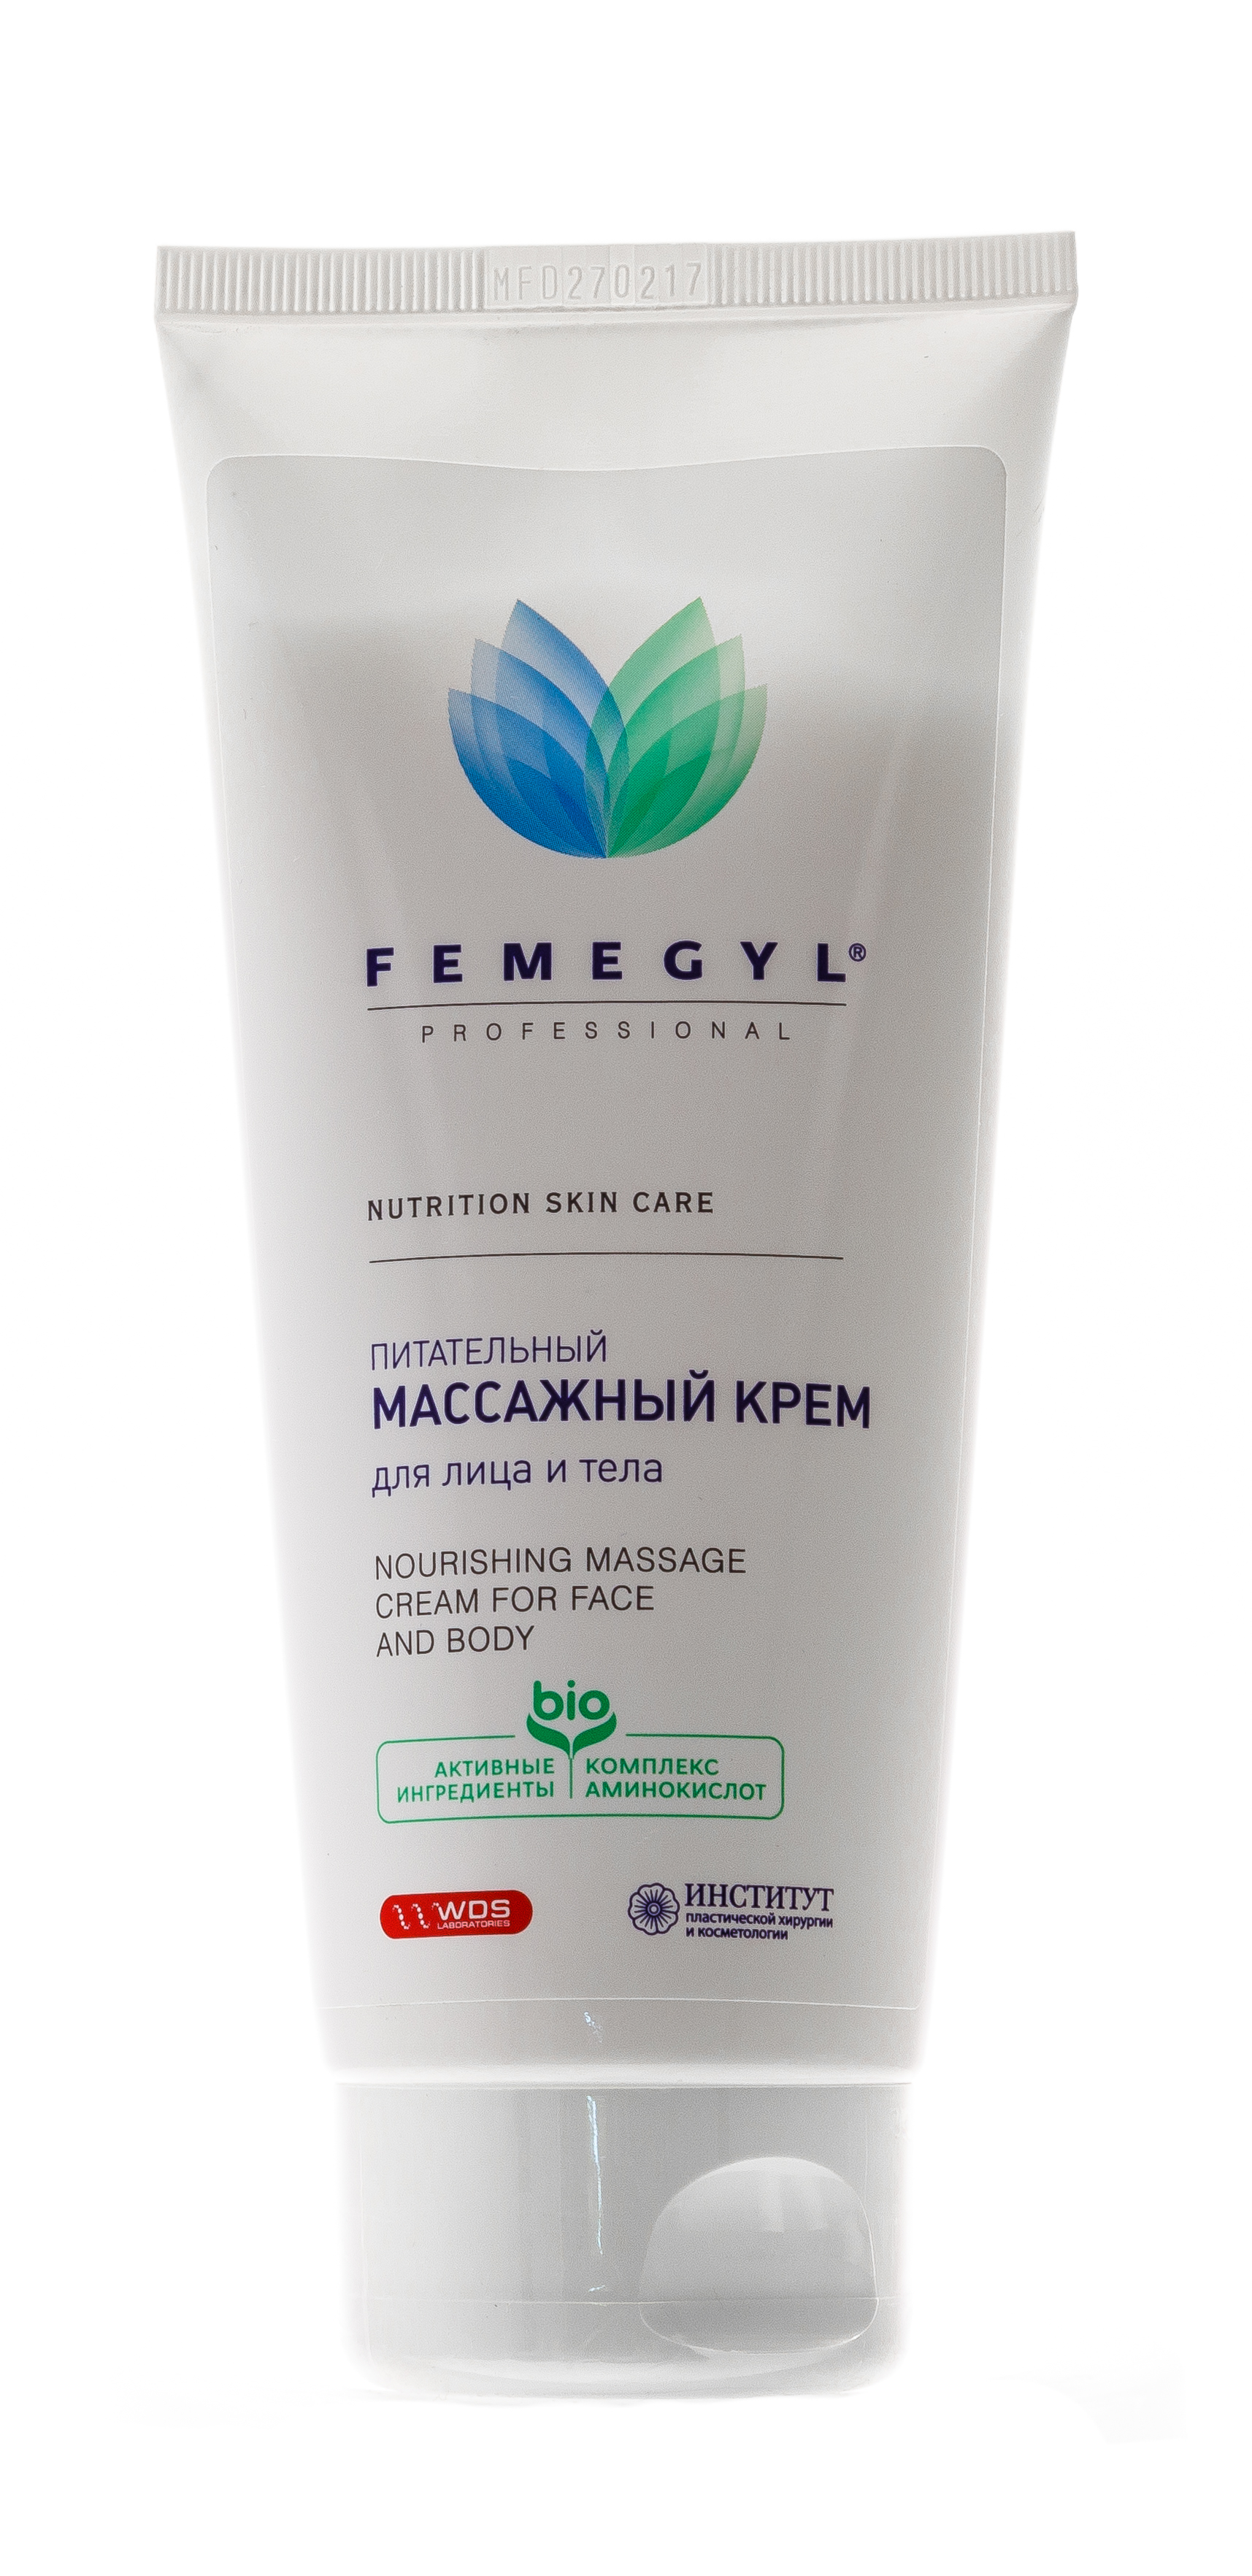 Femegyl Питательный Массажный крем для лица и тела, 200 мл (Femegyl, Femegyl professional)